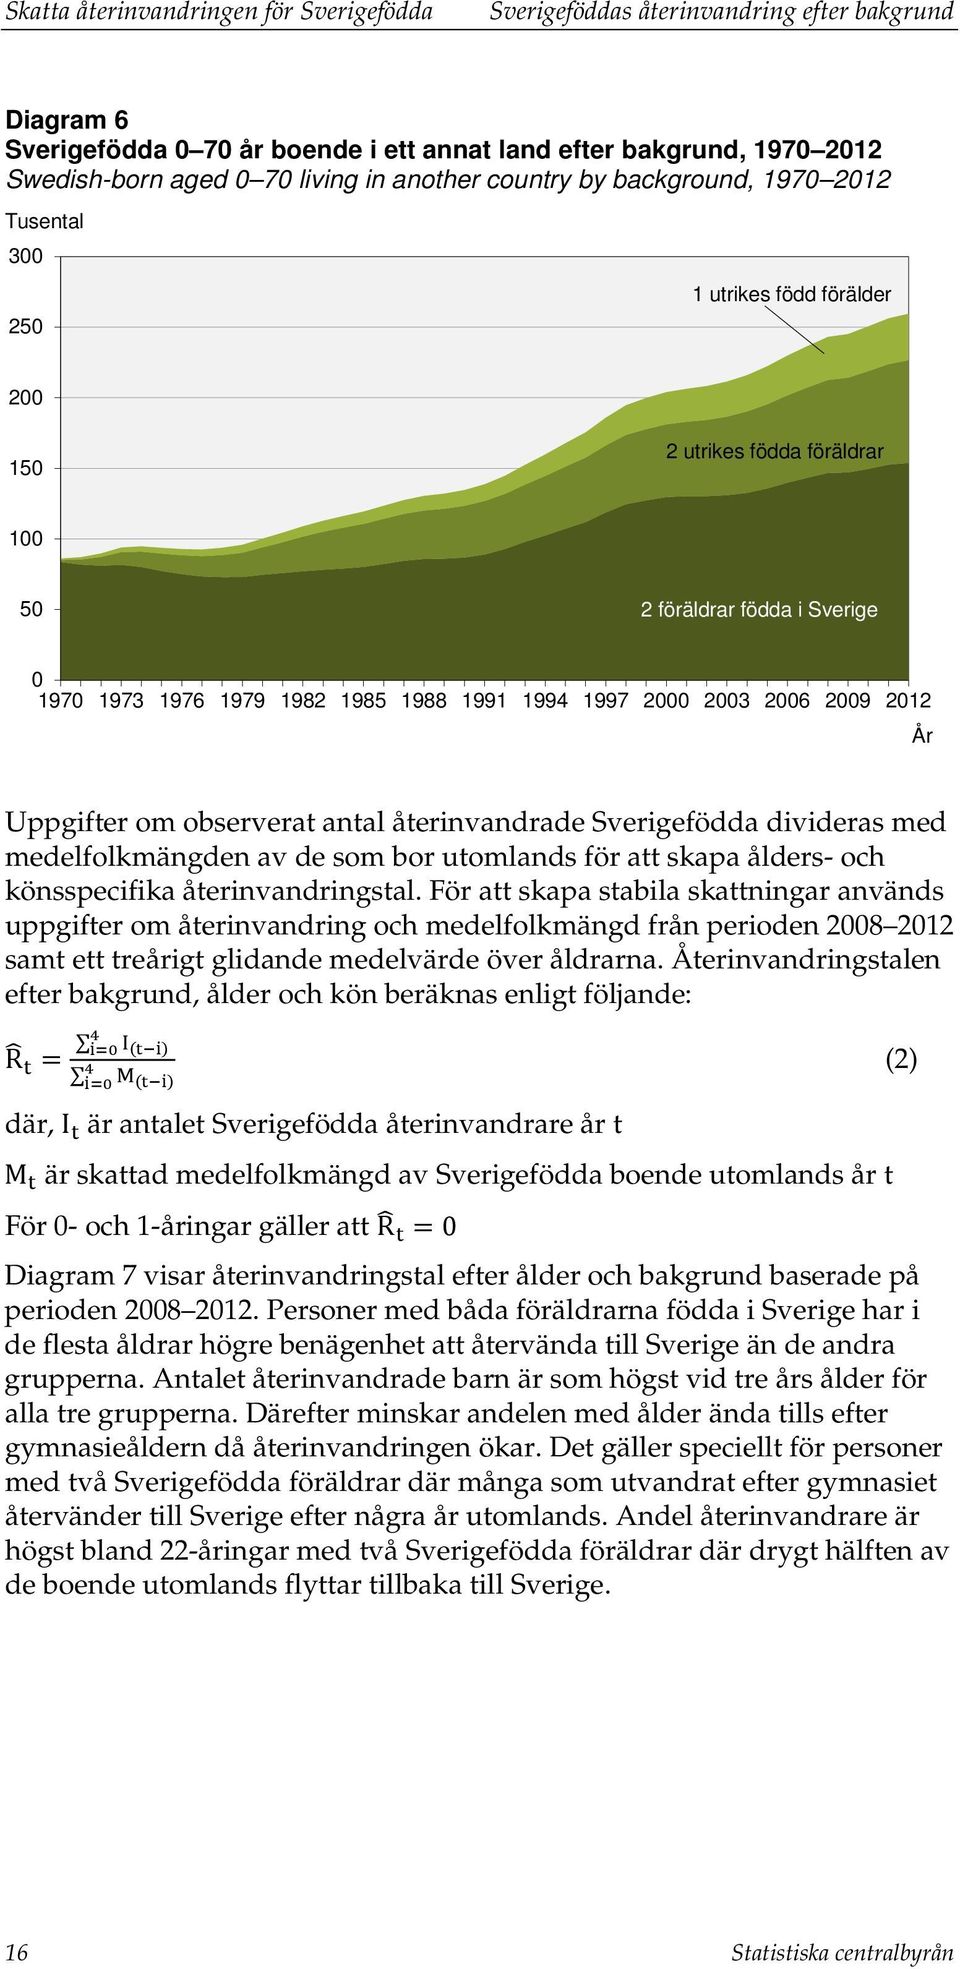 1997 2000 2003 2006 2009 2012 År Uppgifter om observerat antal återinvandrade Sverigefödda divideras med medelfolkmängden av de som bor utomlands för att skapa ålders- och könsspecifika